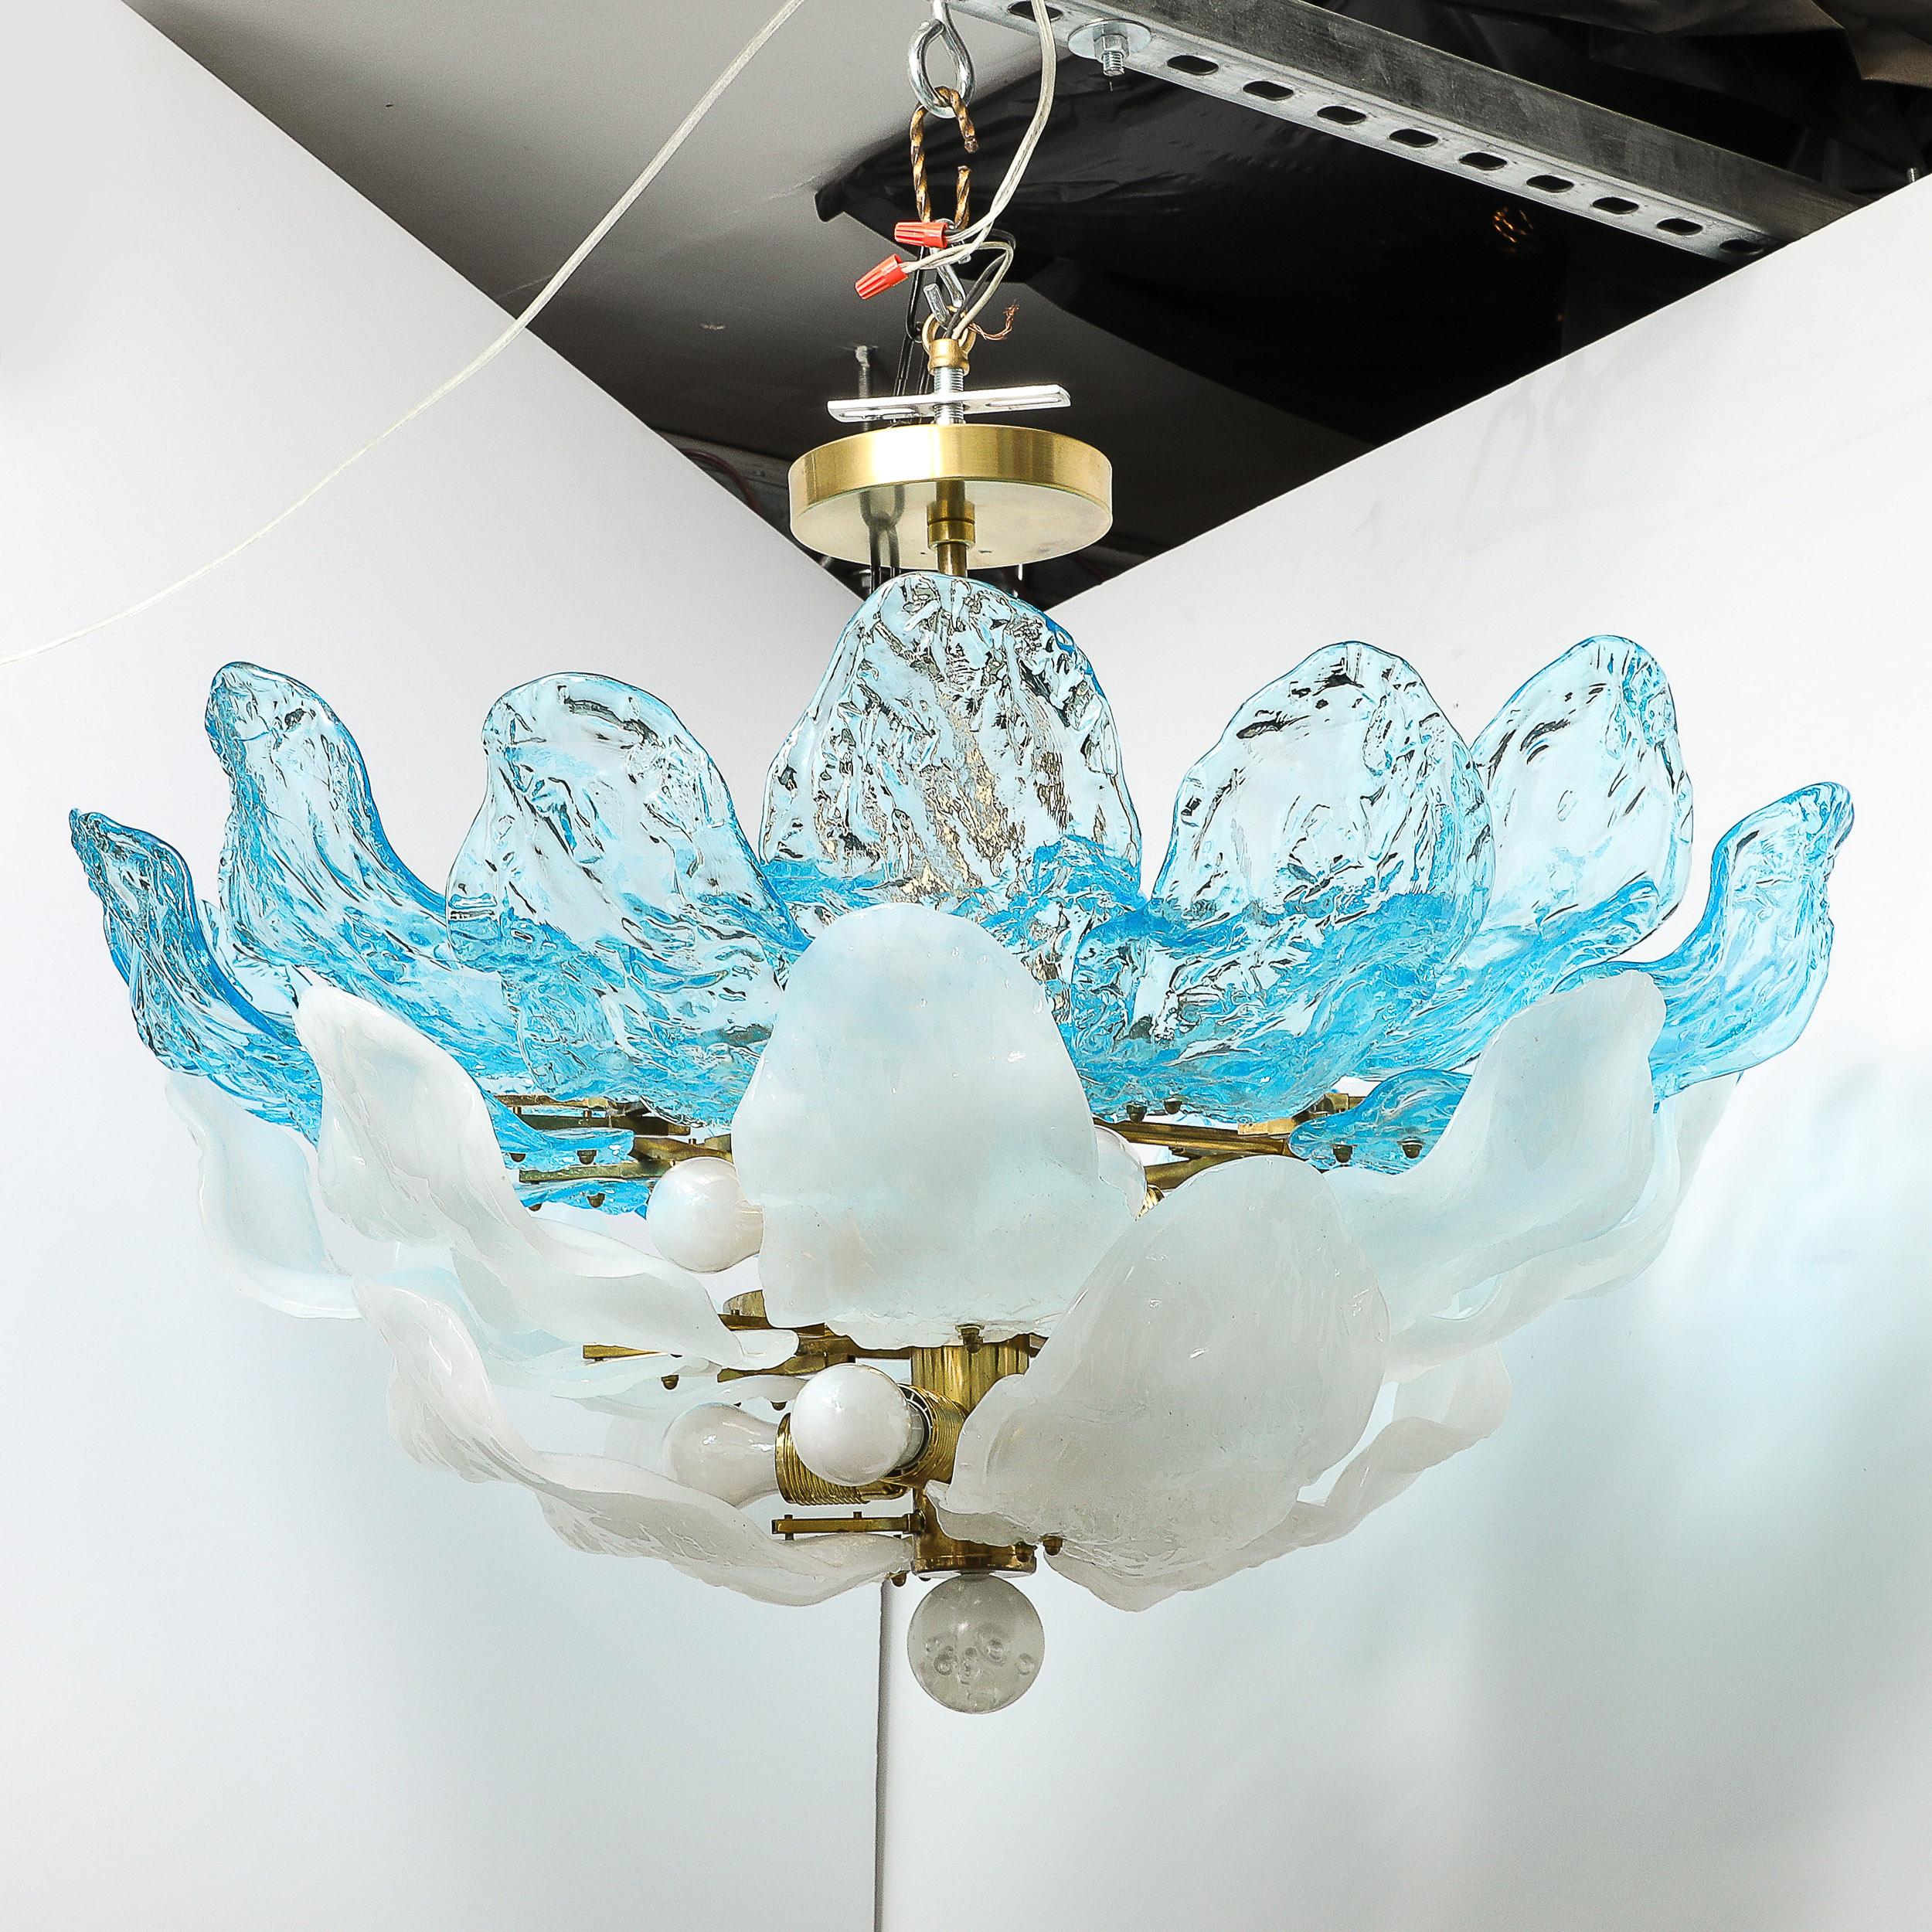 Ce magnifique lustre à deux étages en verre de Murano soufflé à la main, bleu céruléen et blanc, avec goutte orbitale, est originaire d'Italie et date de 1960. Formé d'une multitude de pétales en verre de Murano soufflé à la main, le blanc et le